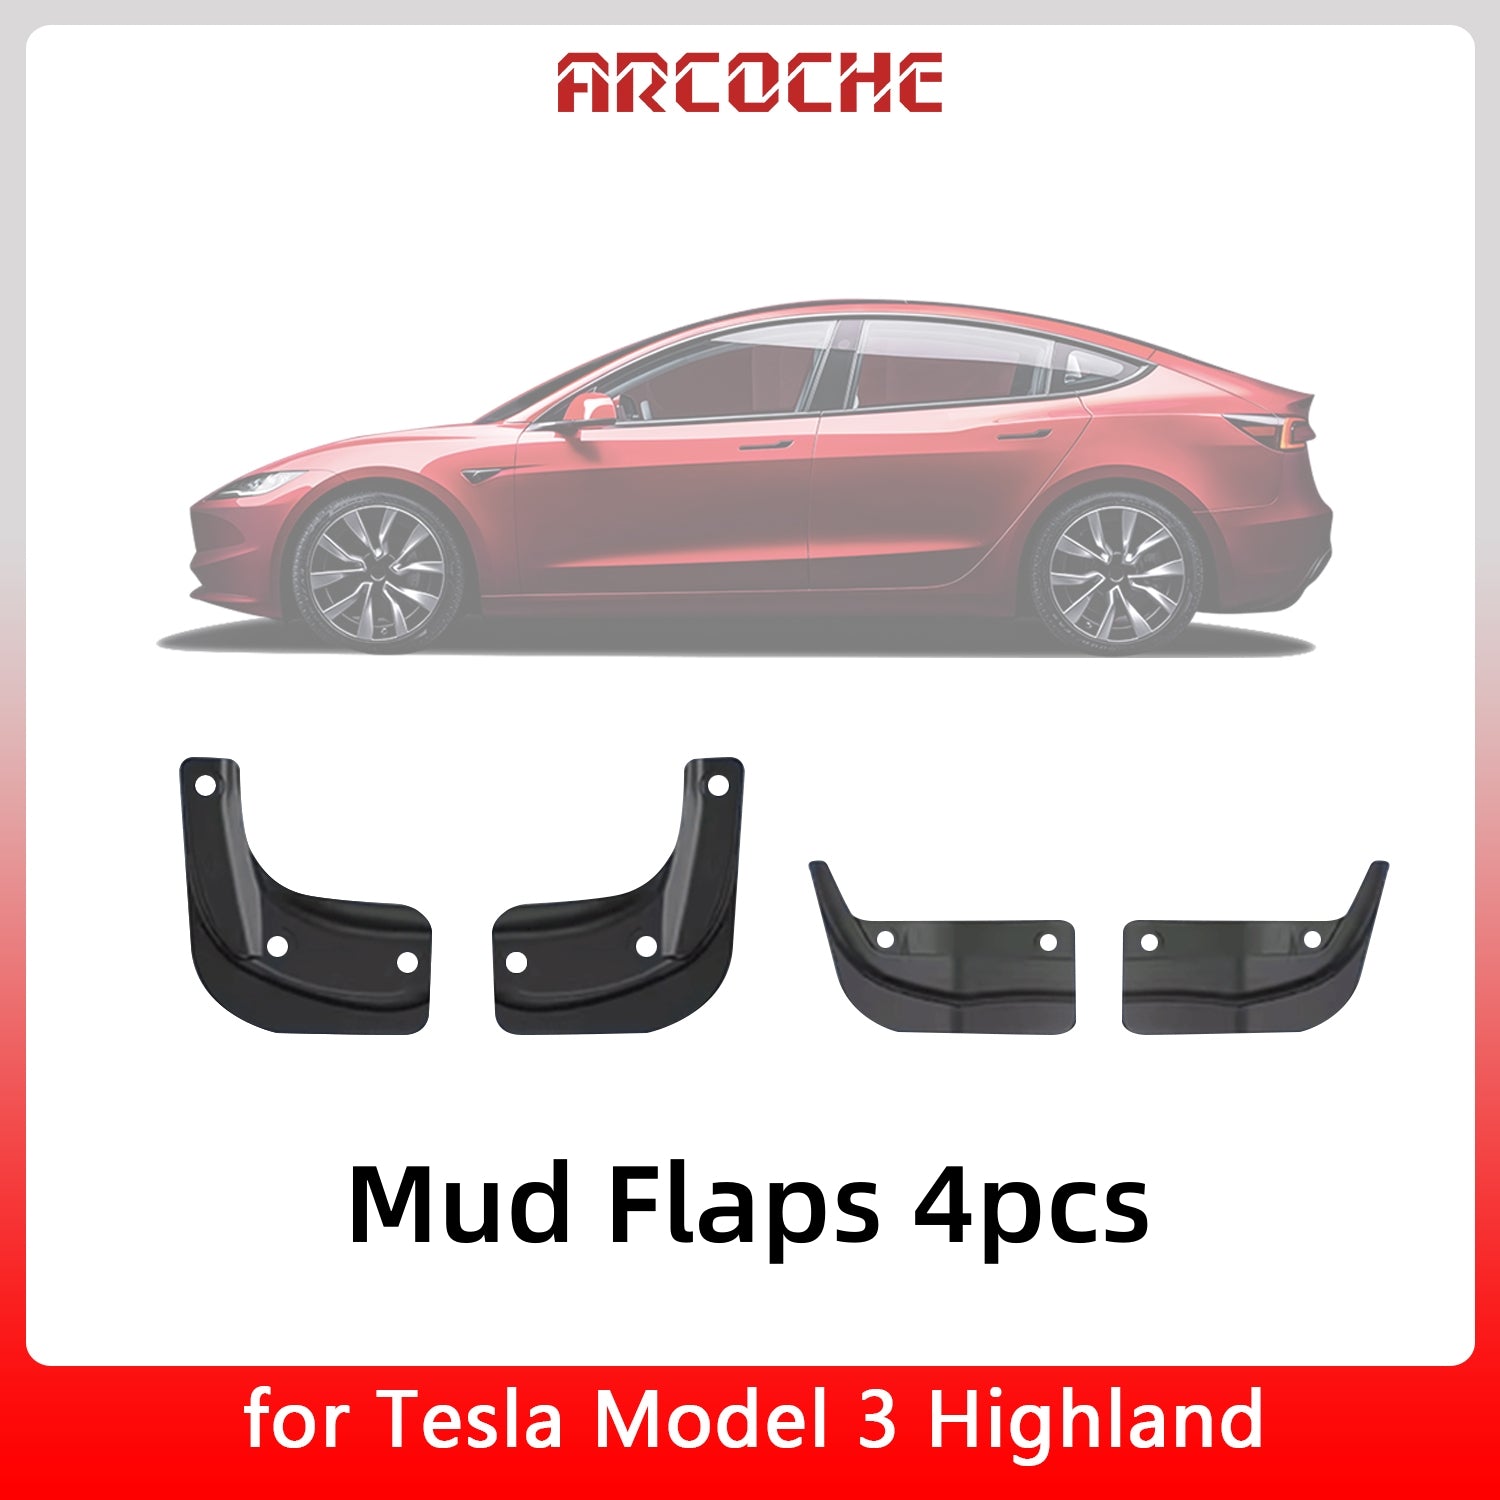 Accessoire Tesla : Boite de rangement couleurs Model 3+ Highland. – Allset